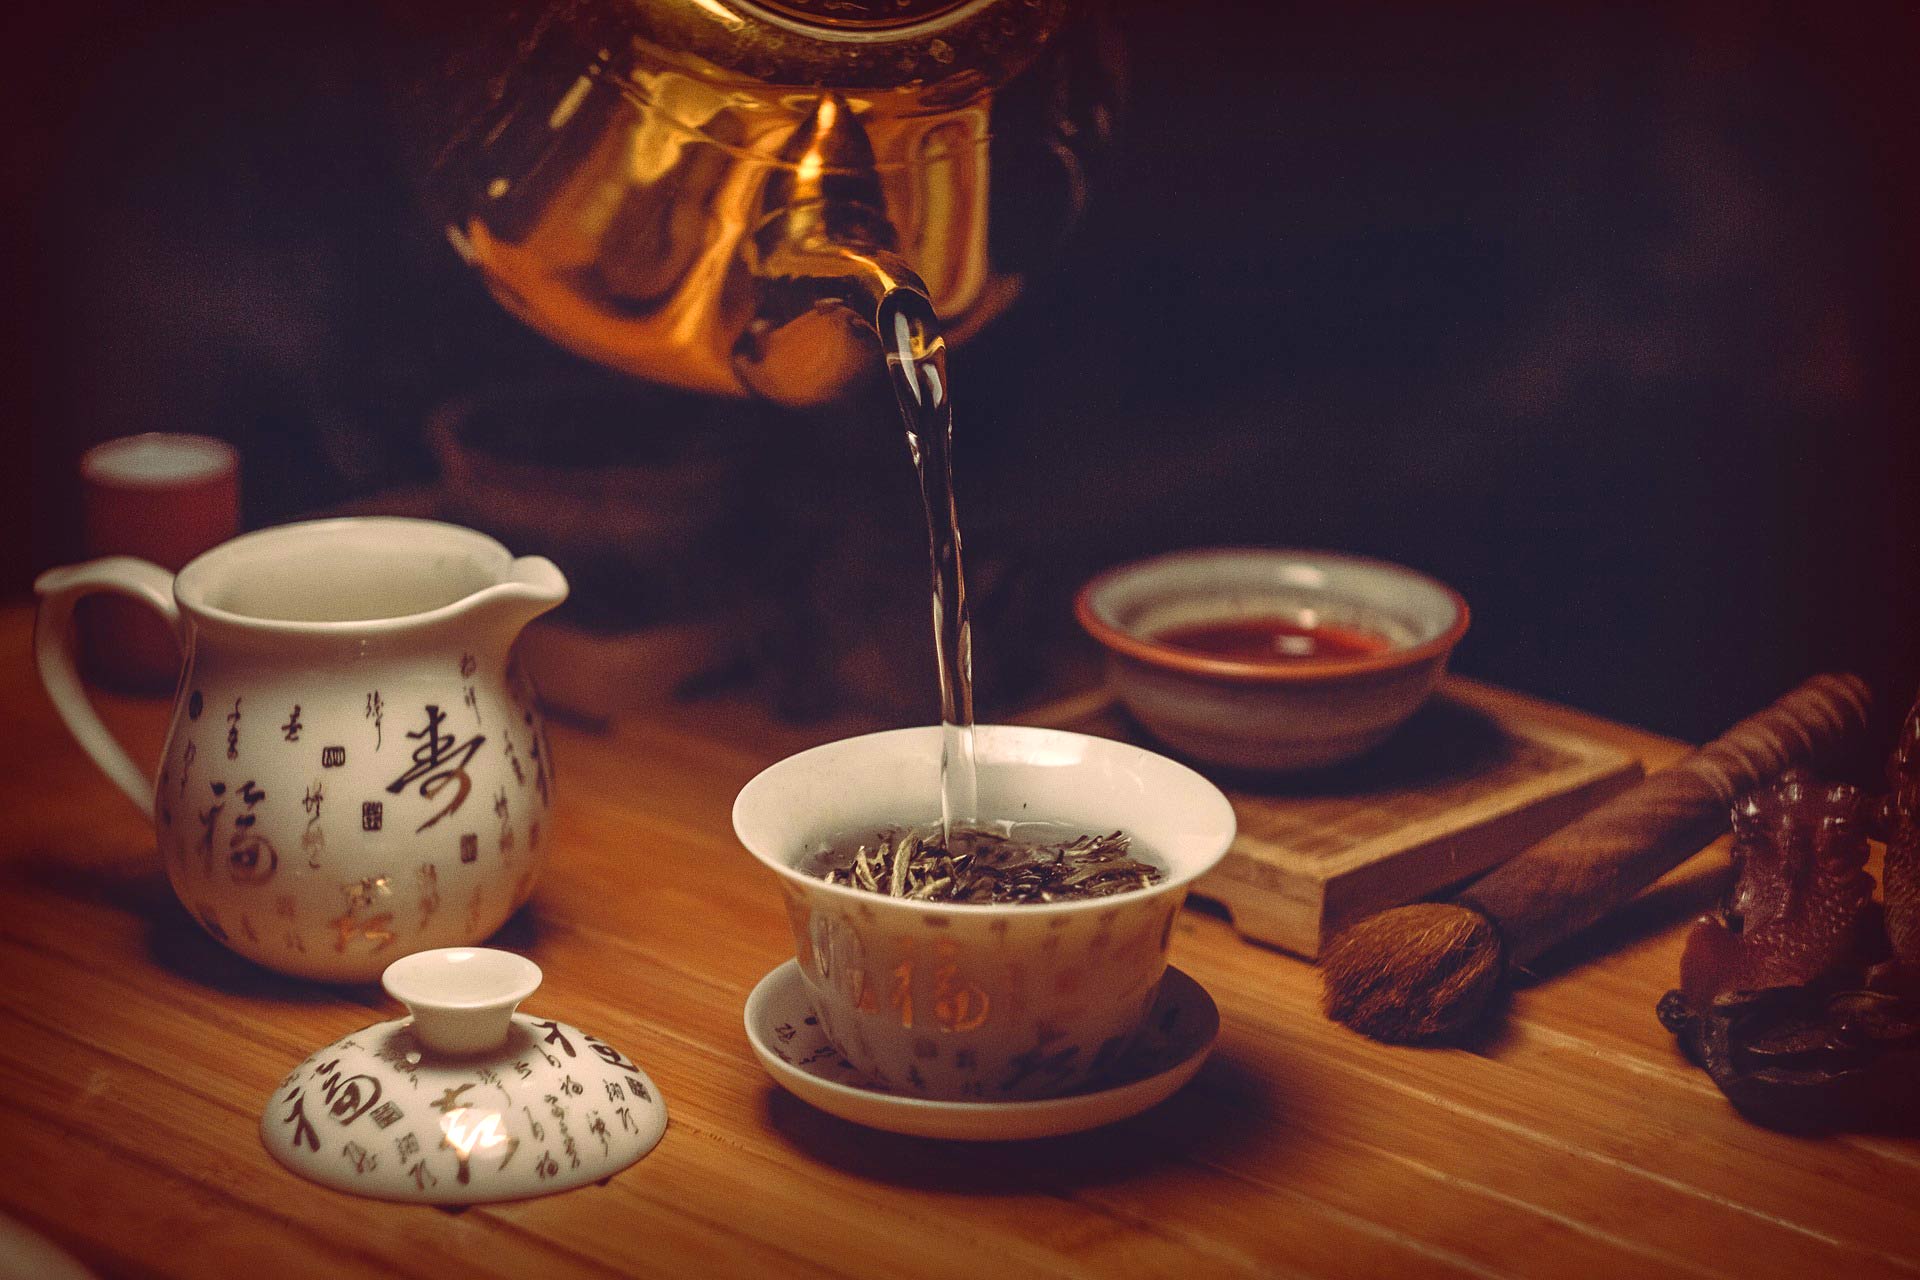 الشاي الحار يزيد من خطر الإصابة بمرض السرطان